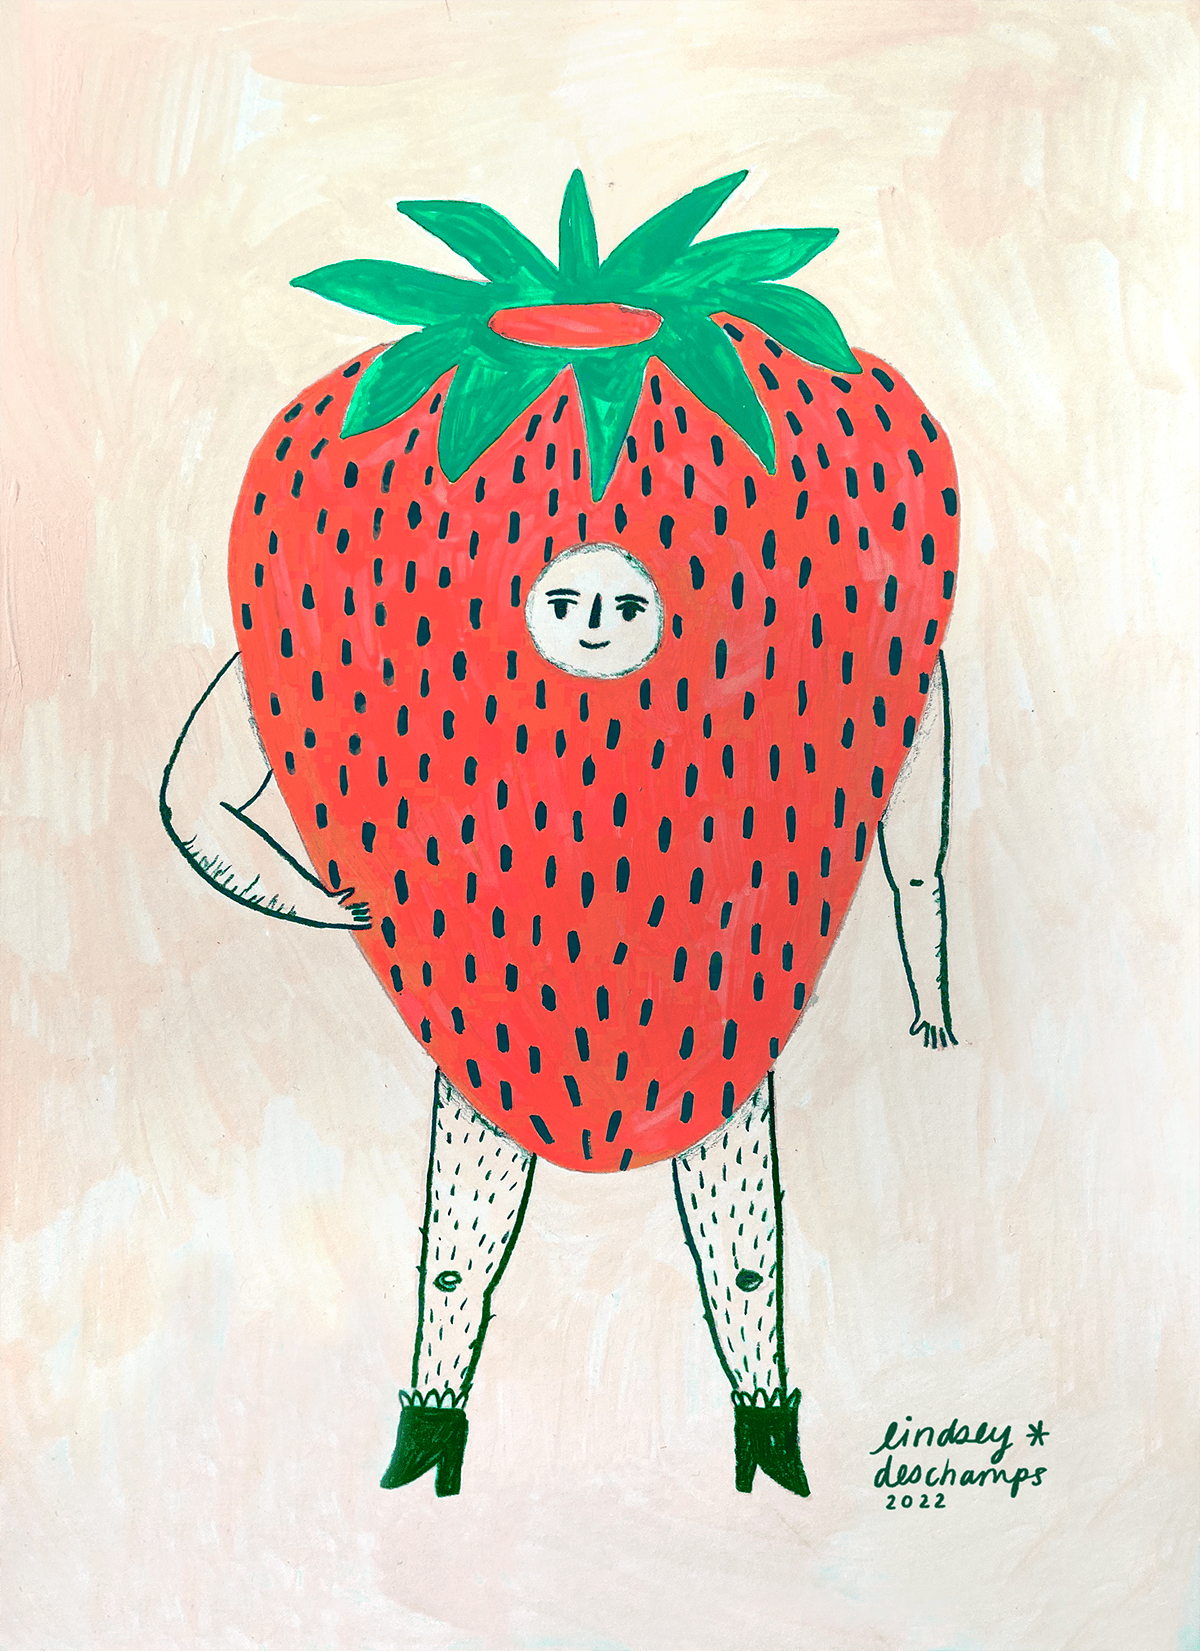 Lindsey Deschamps strawberry